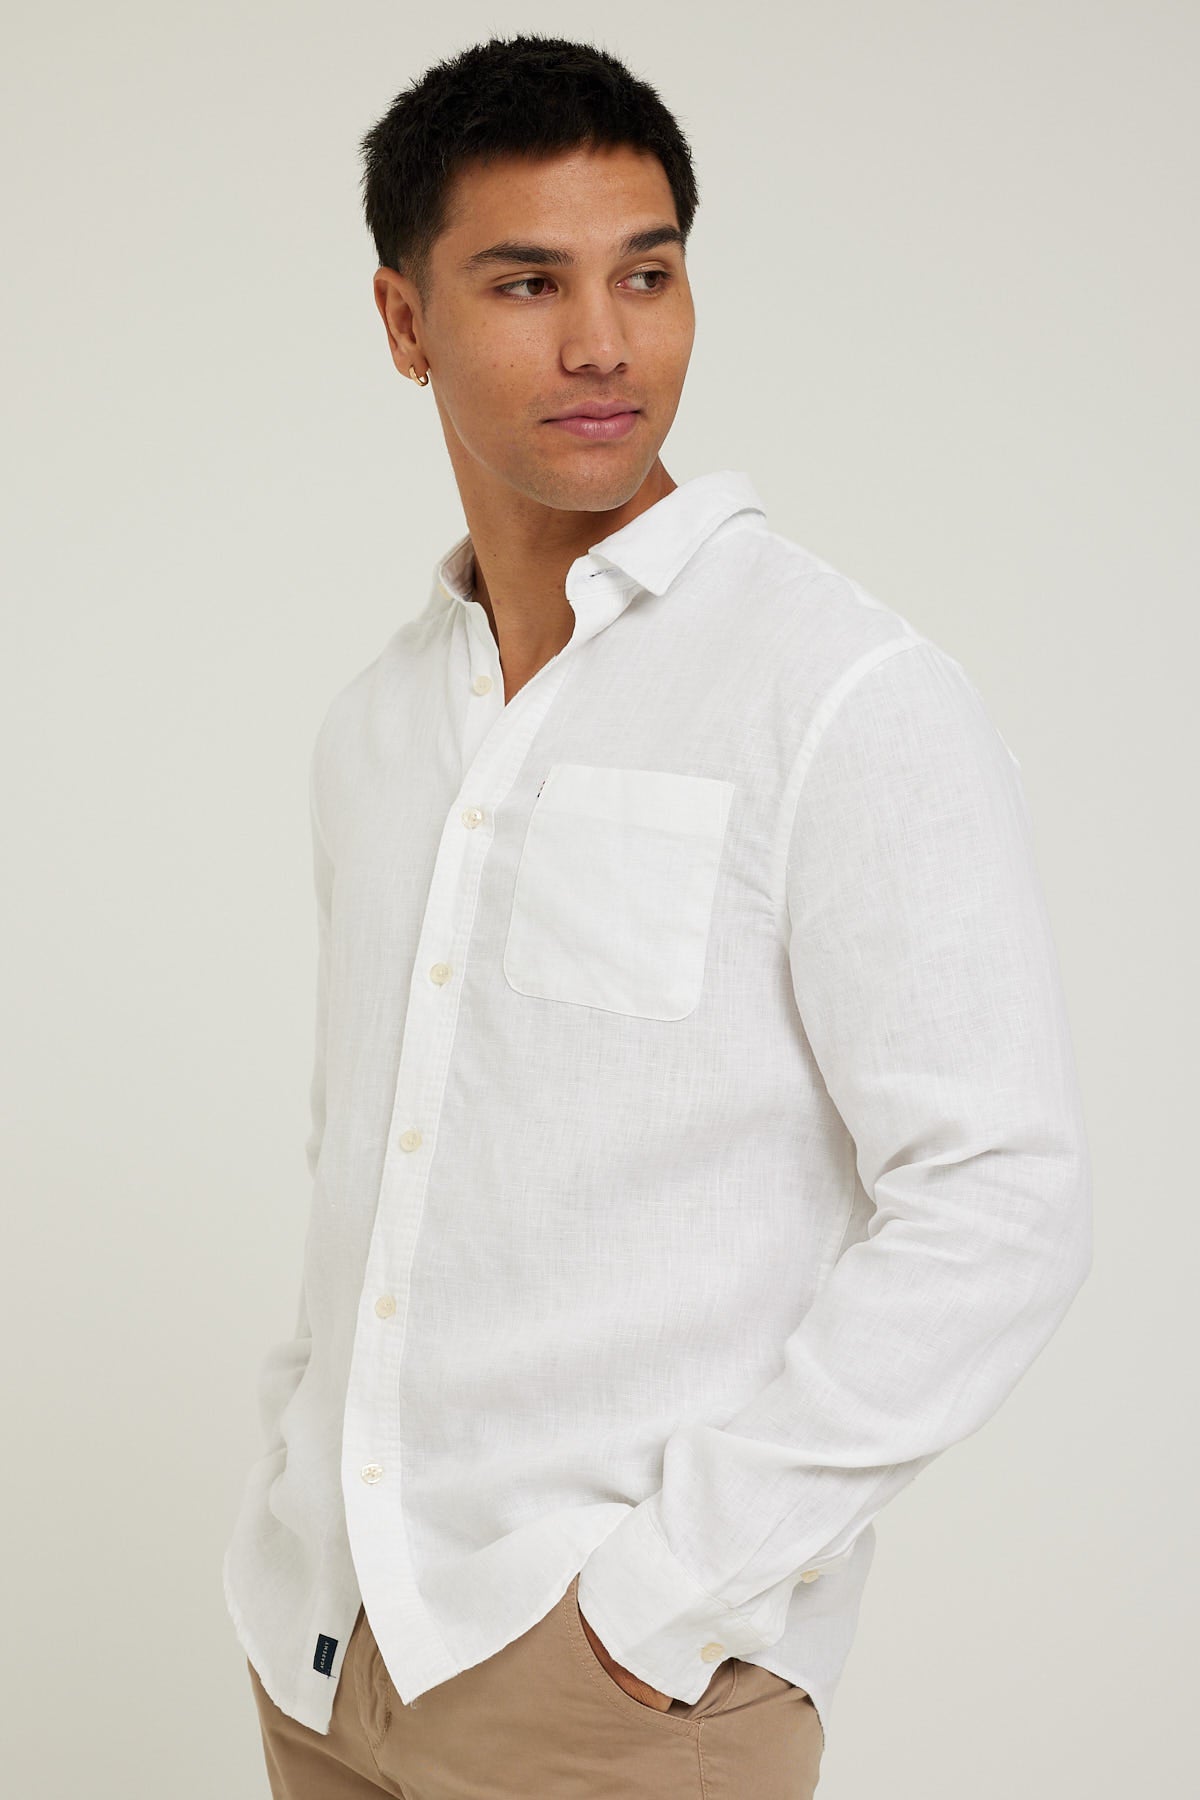 Academy Brand Hampton LS Shirt White